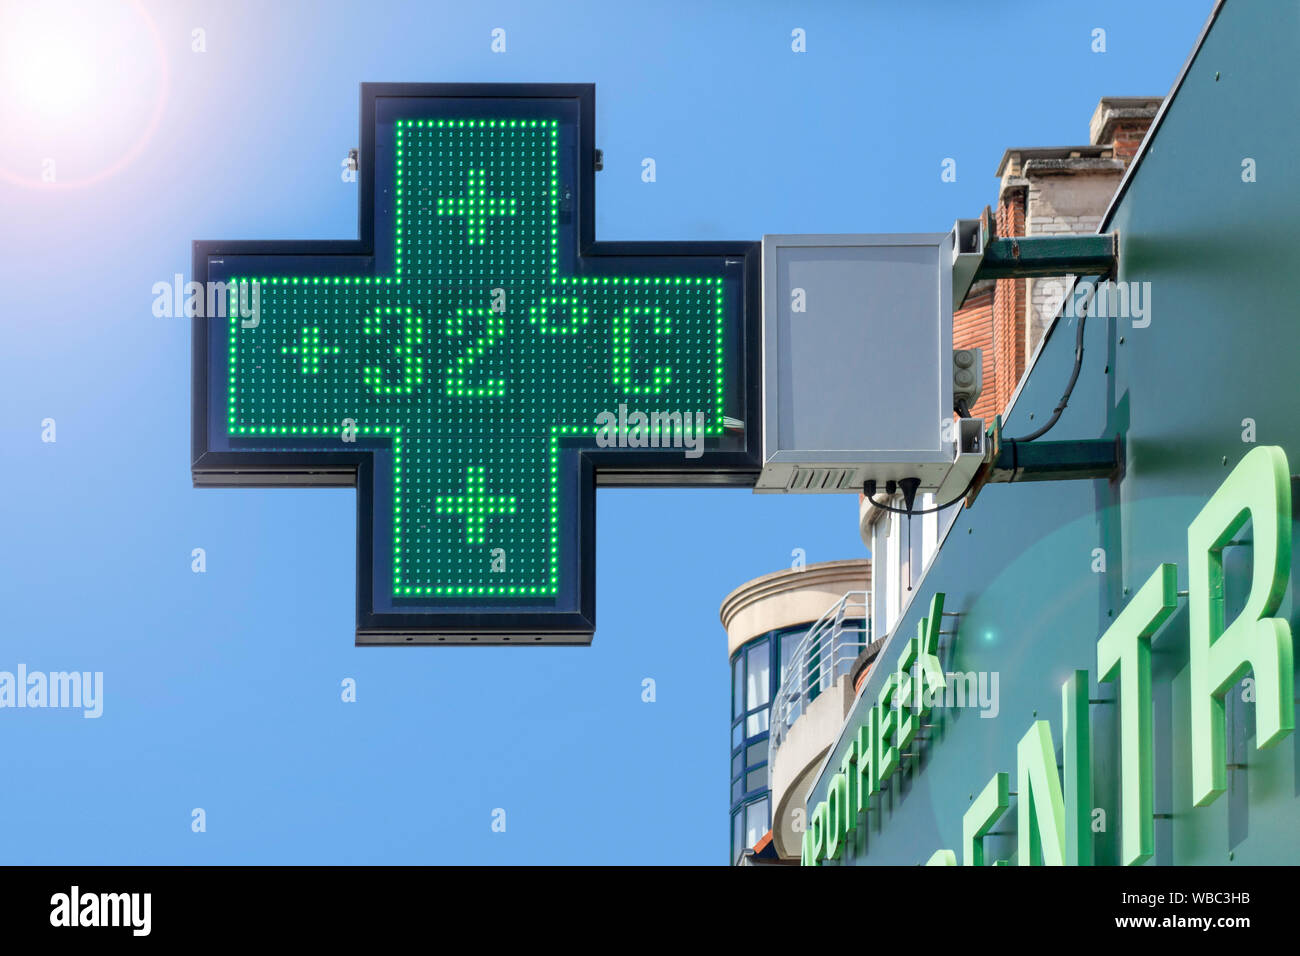 Thermomètre dans l'écran vert de la pharmacie affiche une température extrêmement chaude de 32 degrés Celsius / 32°C / 32 °C pendant la vague de chaleur d'été / vague de chaleur Banque D'Images